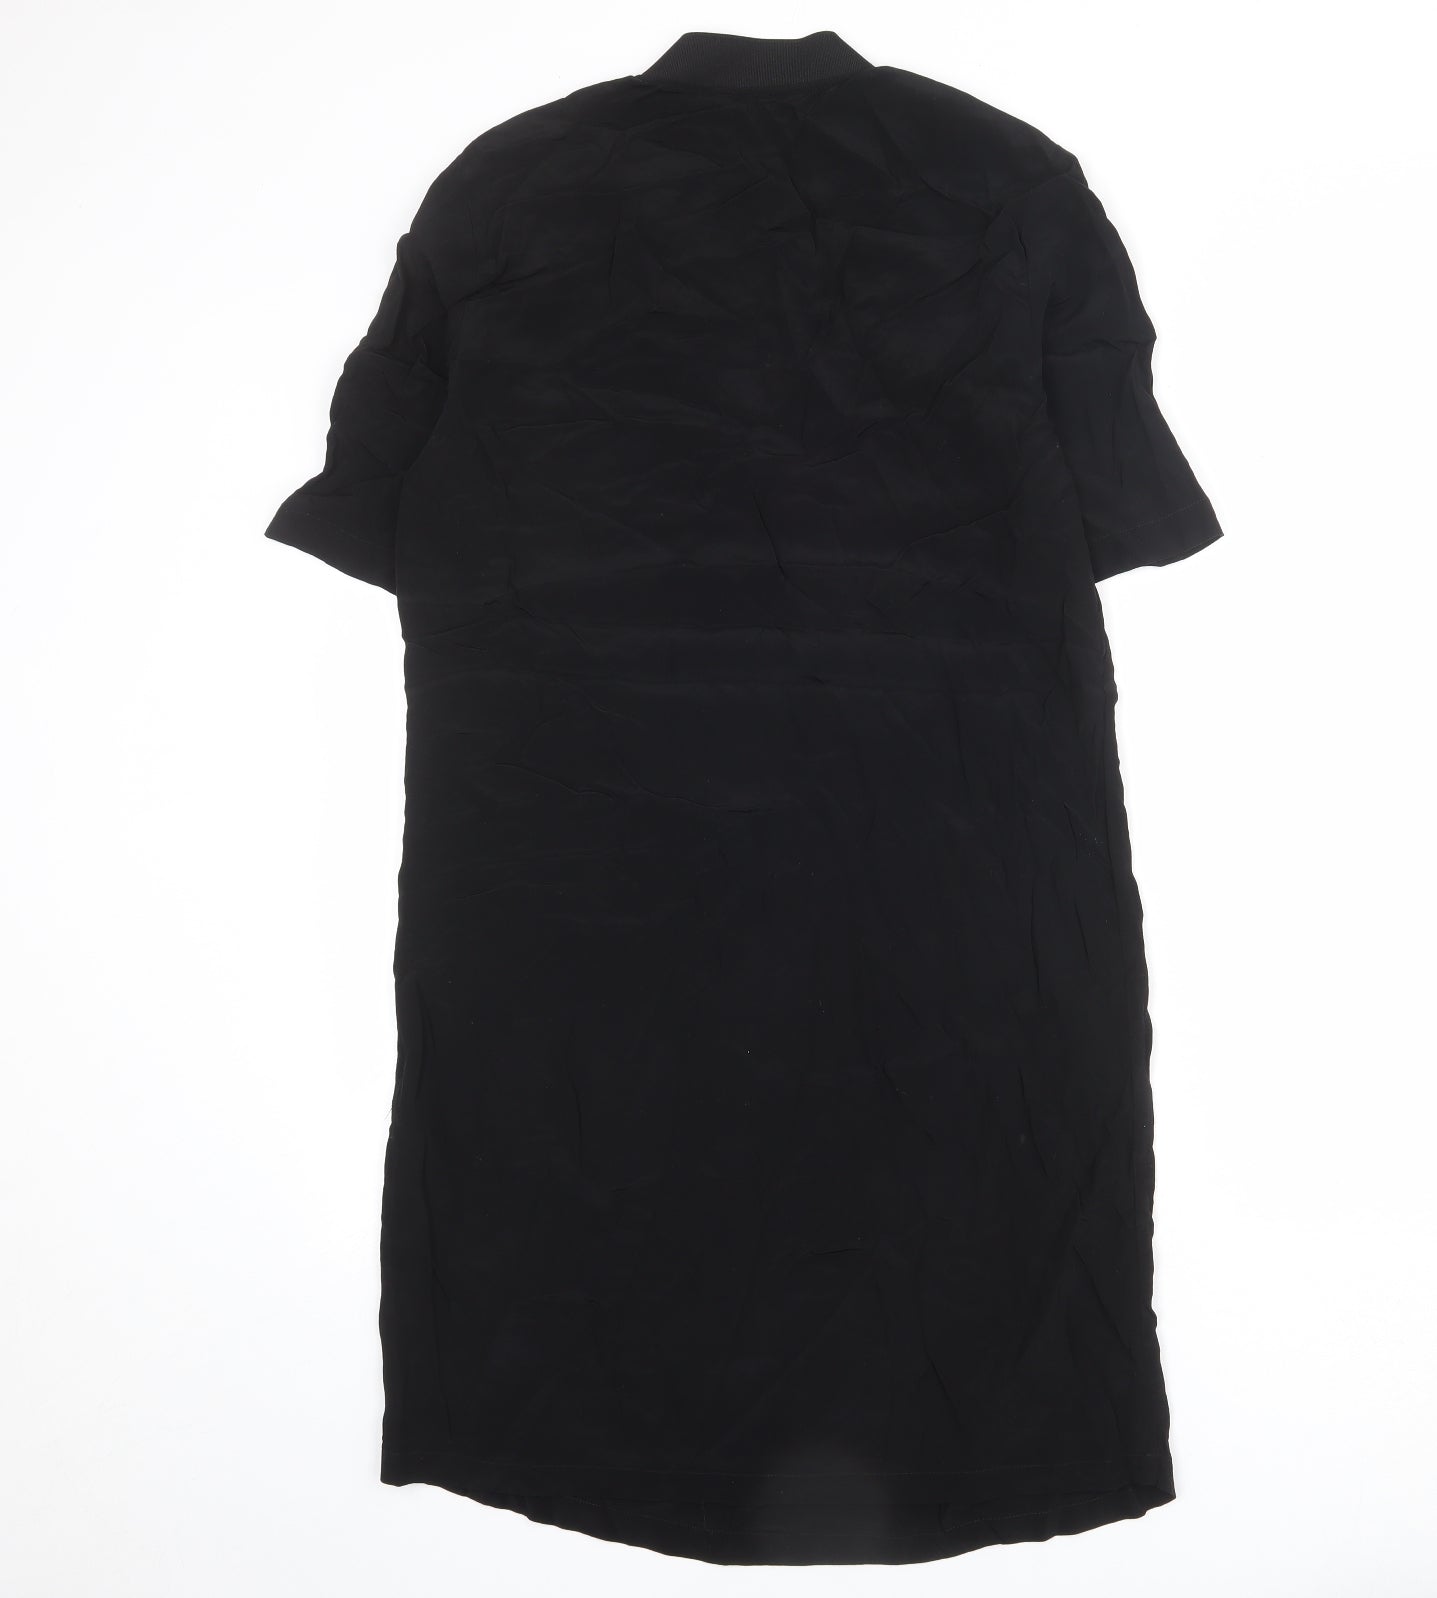 YAYA Womens Black Viscose A-Line Size 8 V-Neck Pullover